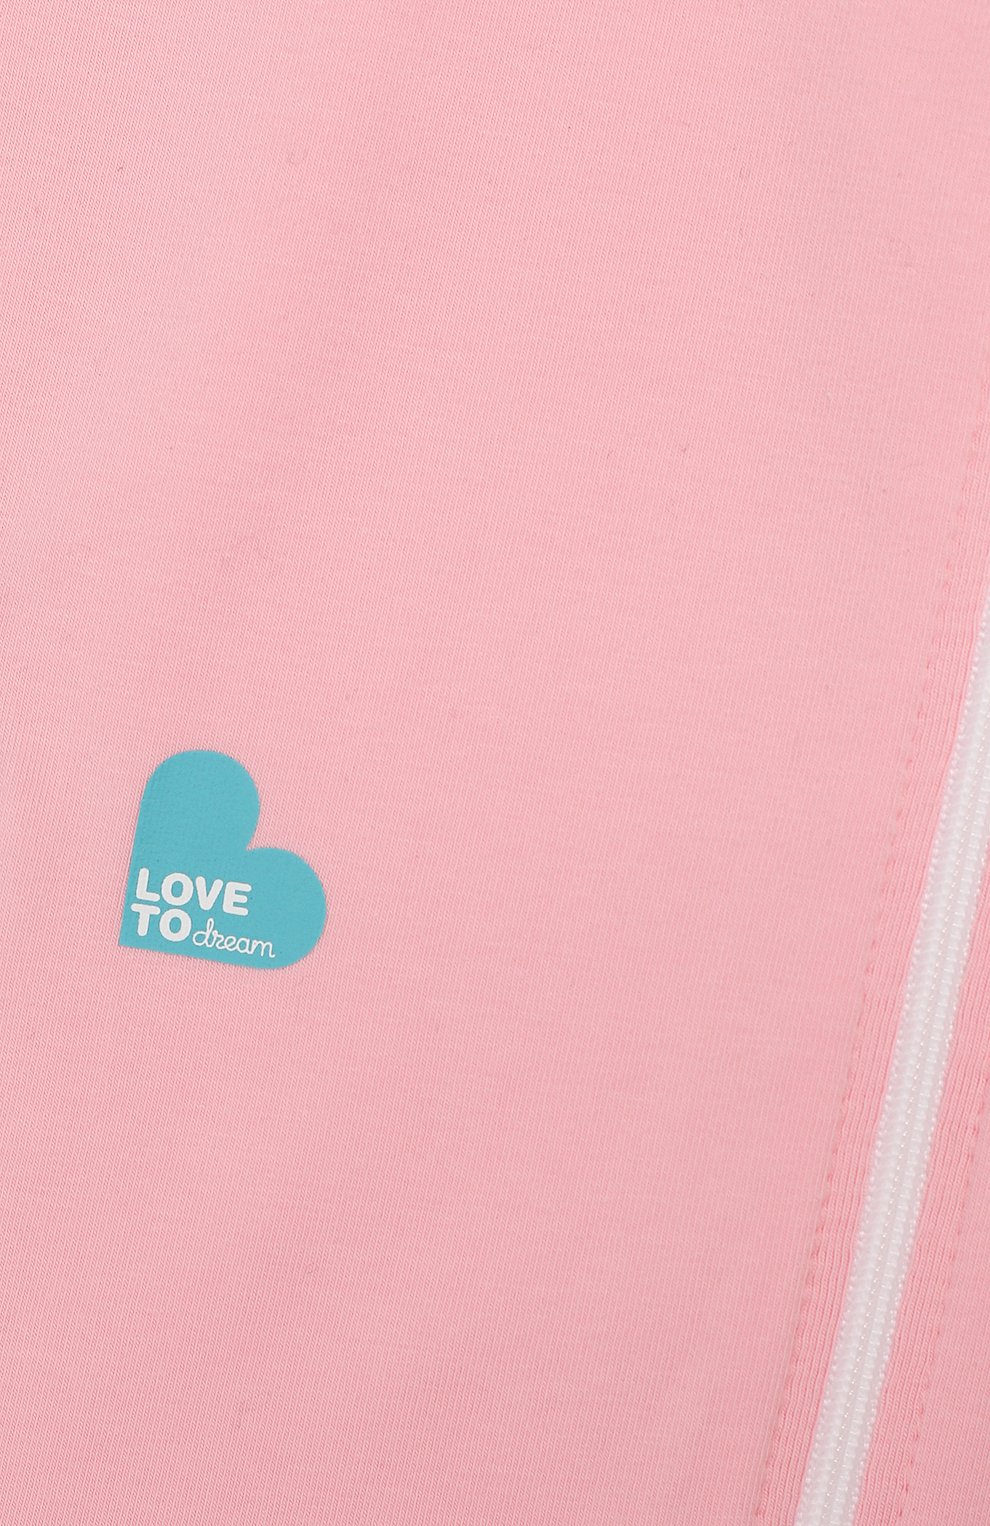 Детский спальный комбинезон LOVE TO DREAM розового цвета, арт. L10 01 001 PK M | Фото 3 (Материал внешний: Хлопо к; Ростовка одежда: 6 мес | 68 см)